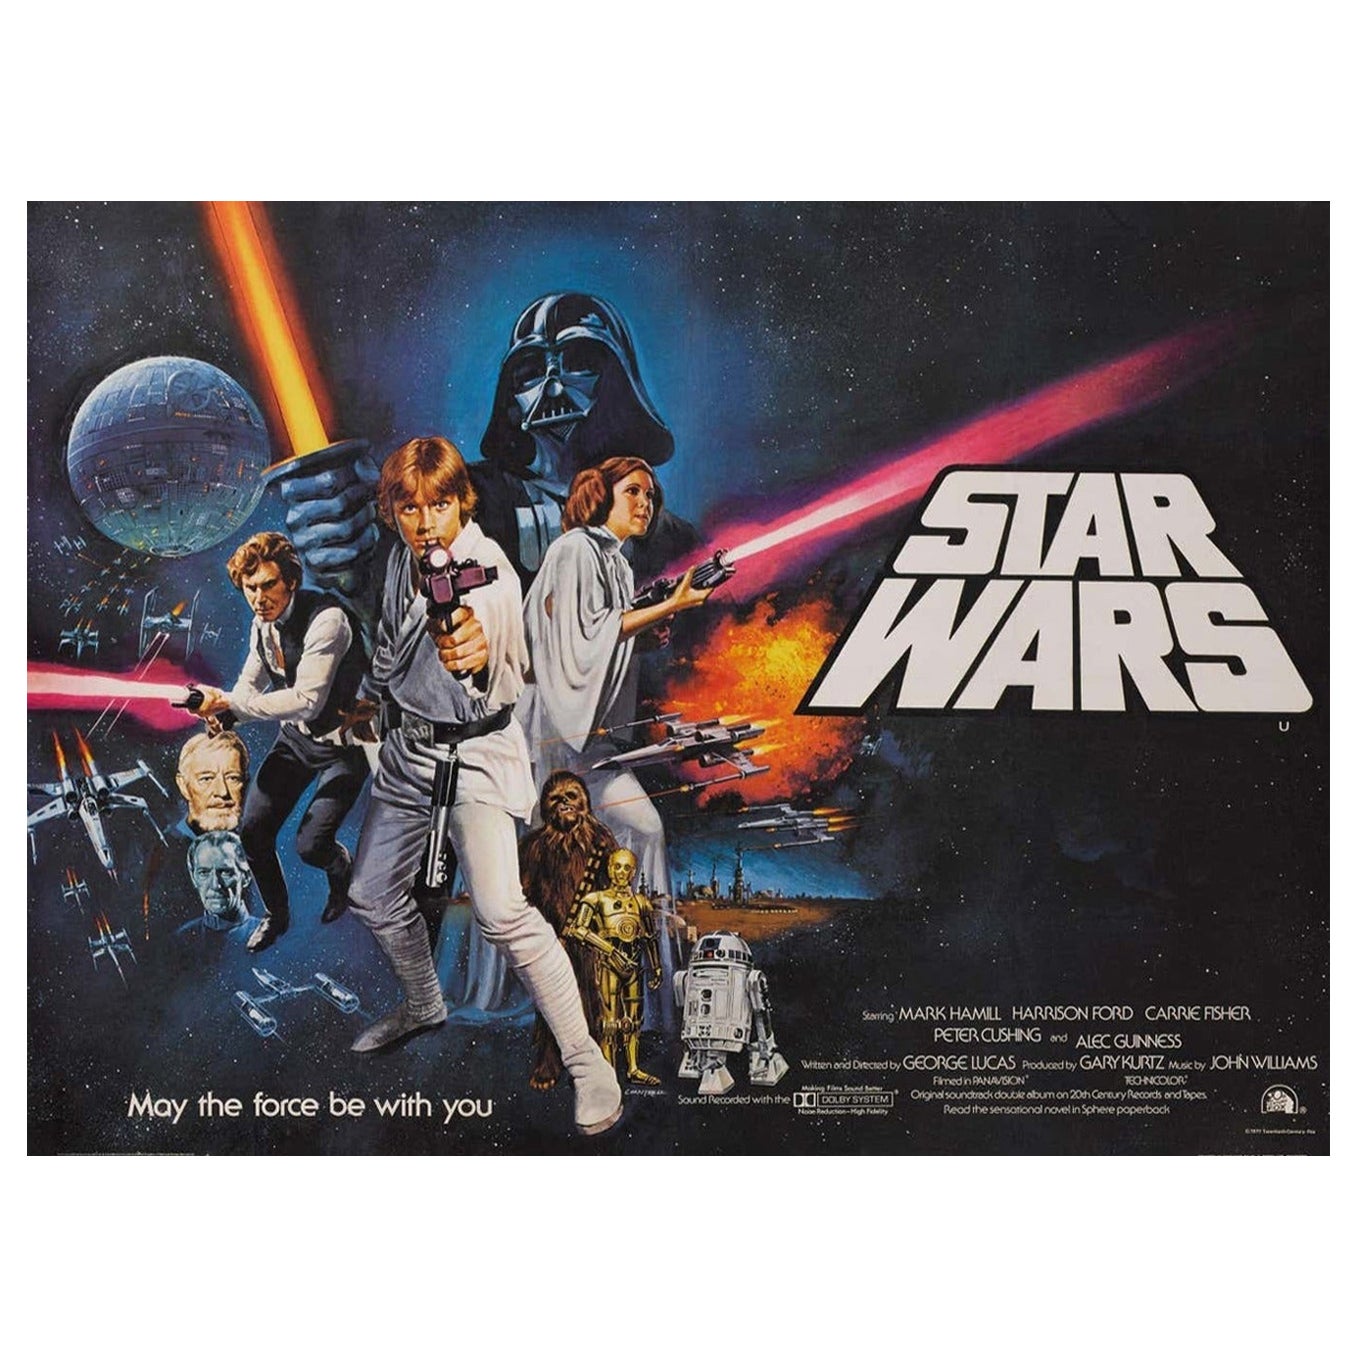 1977 Star Wars Original Vintage Poster For Sale